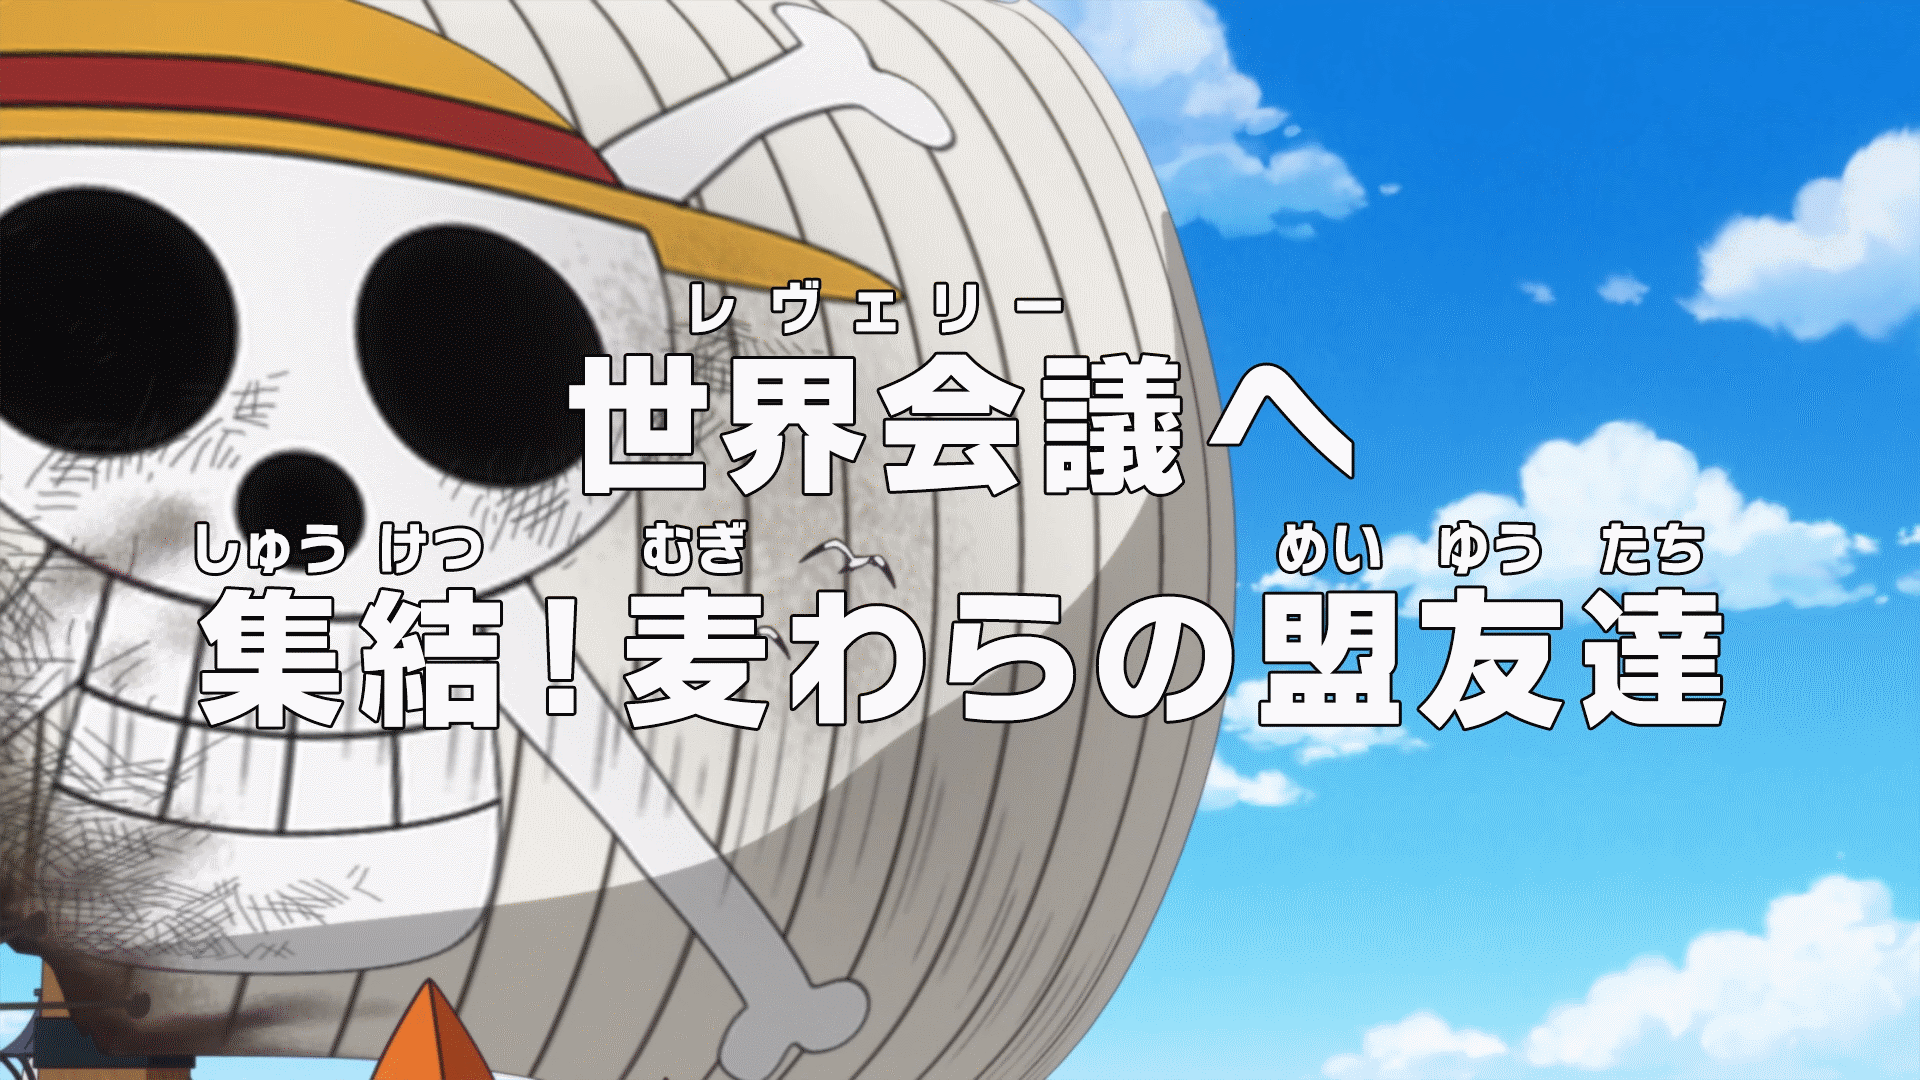 Episode 983, One Piece Wiki